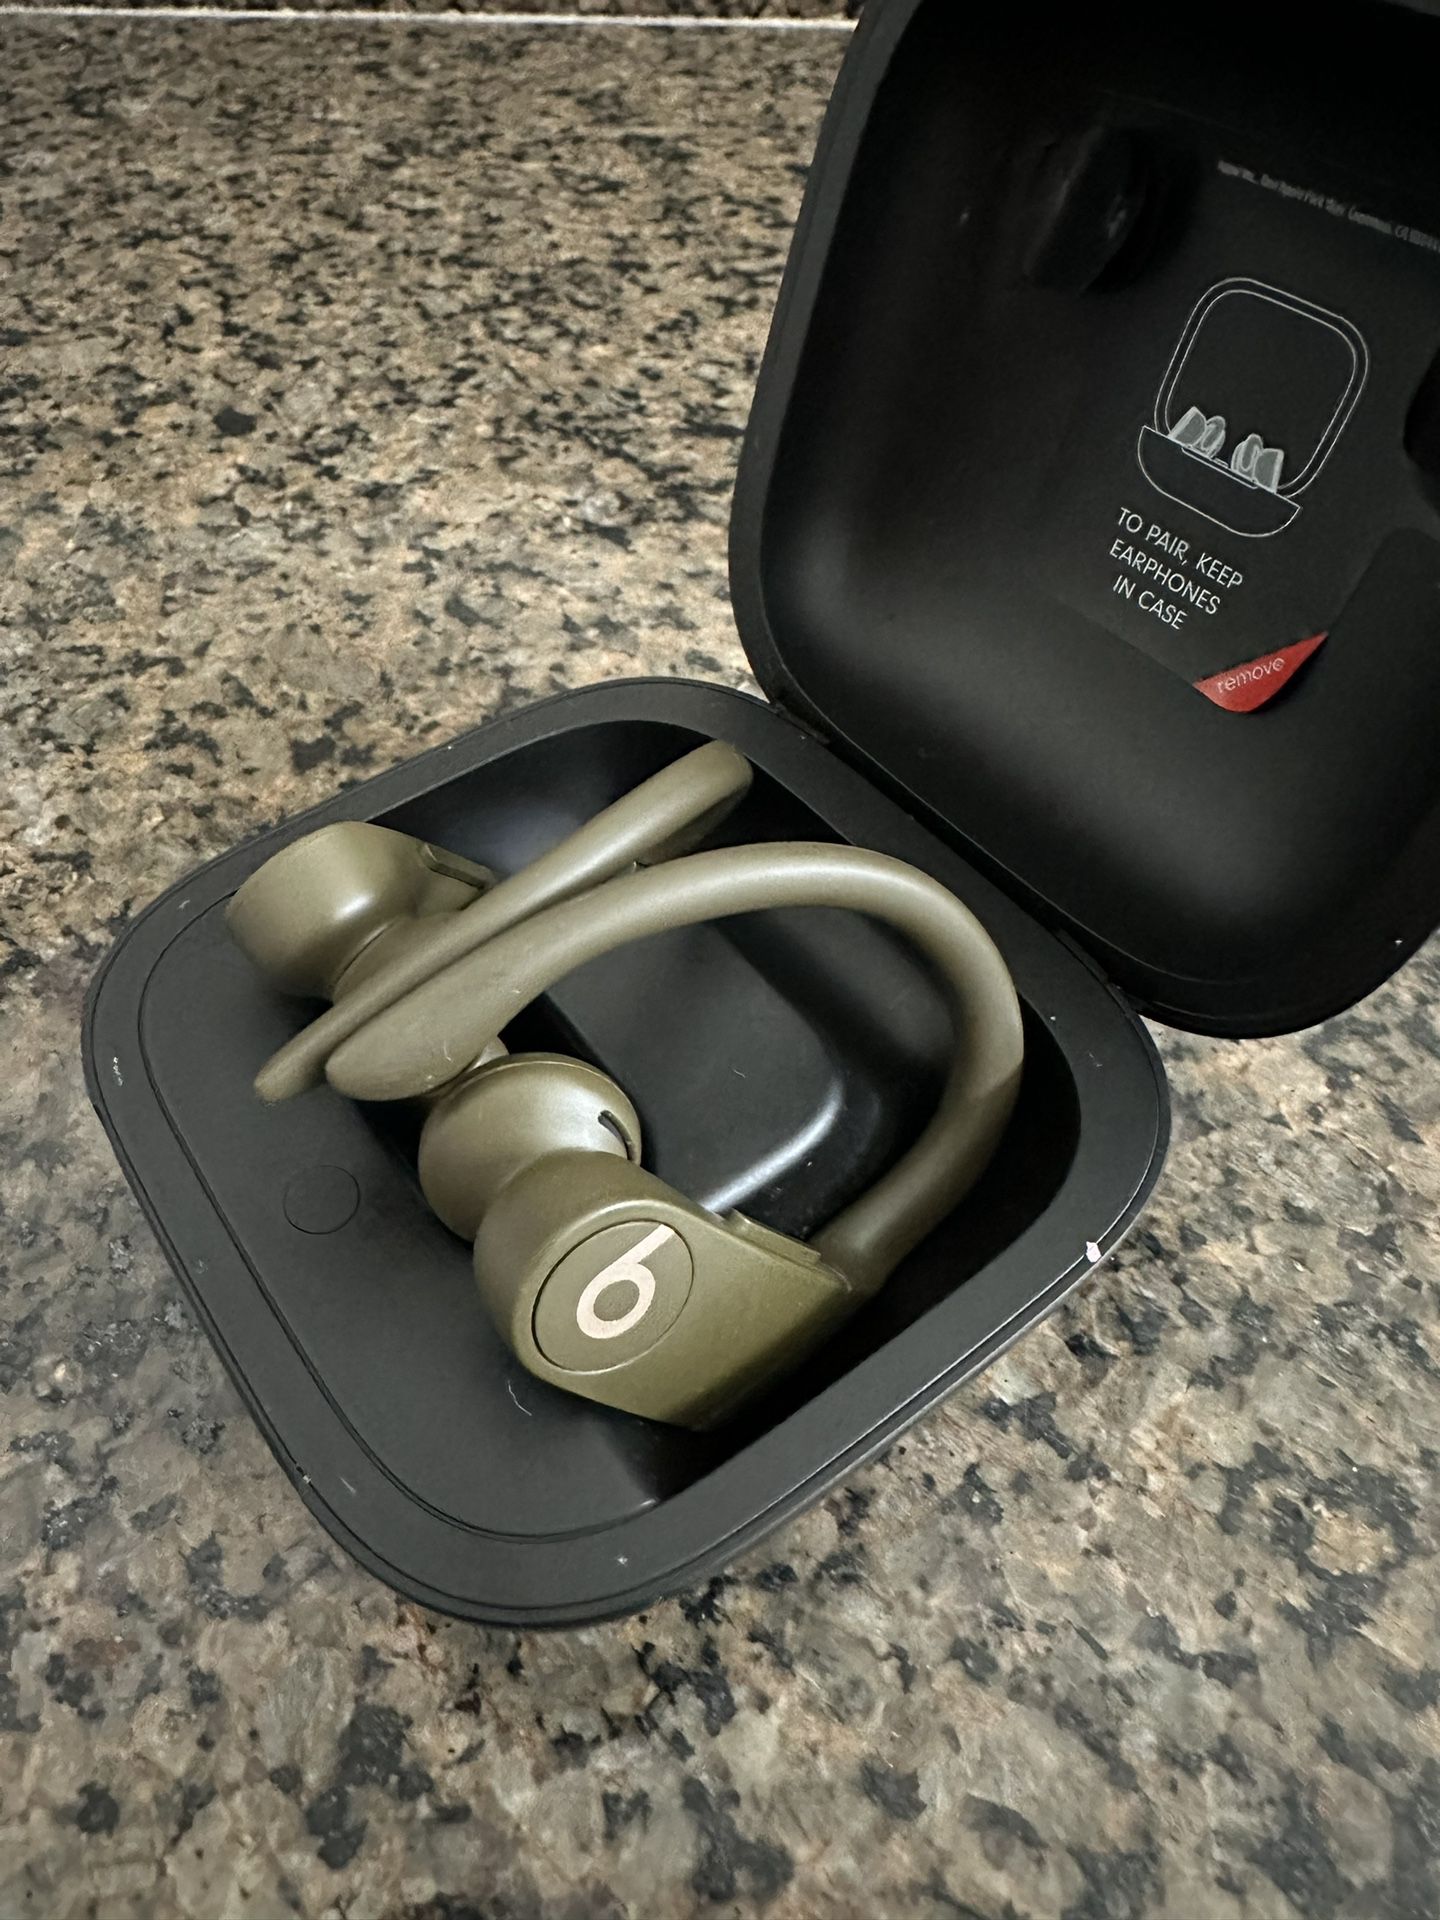  Powerbeats Pro In-Ear Wireless Headphones 